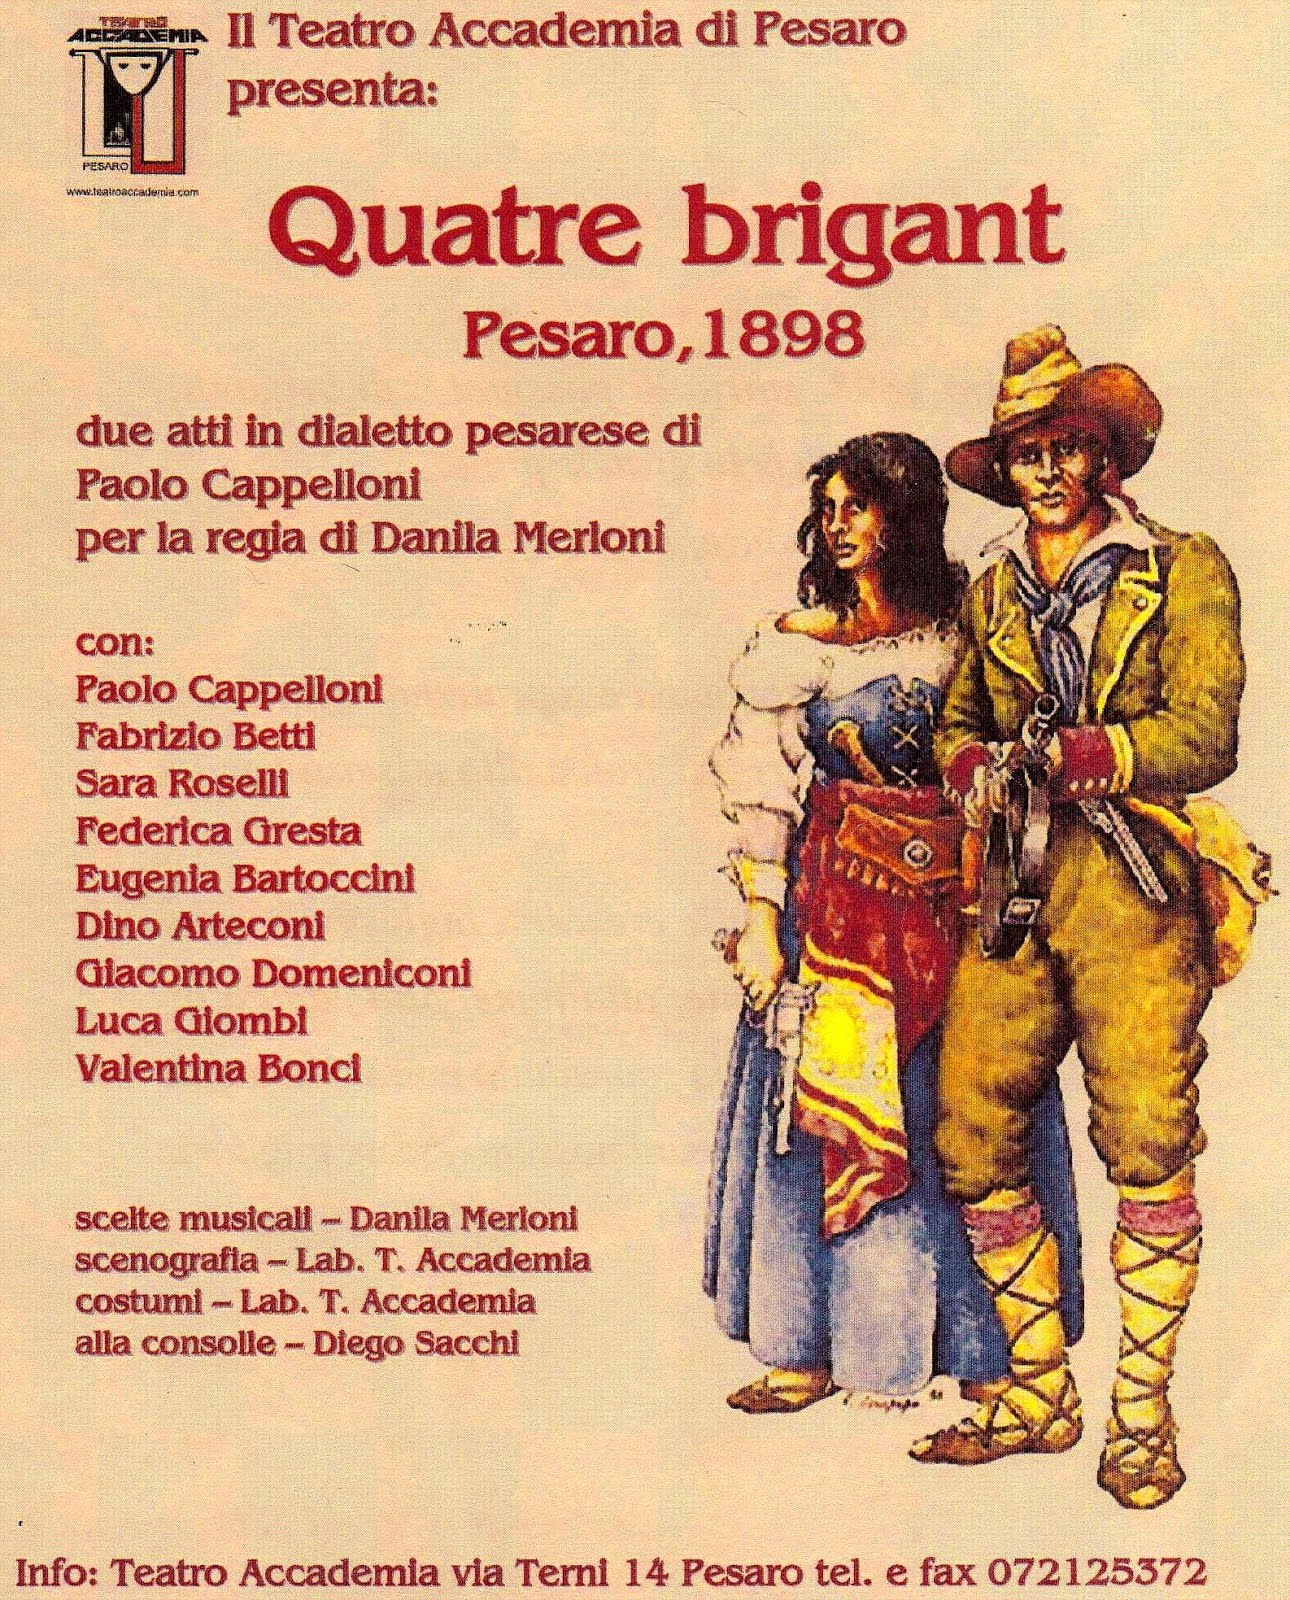 Quatre brigant, Pesaro 1898